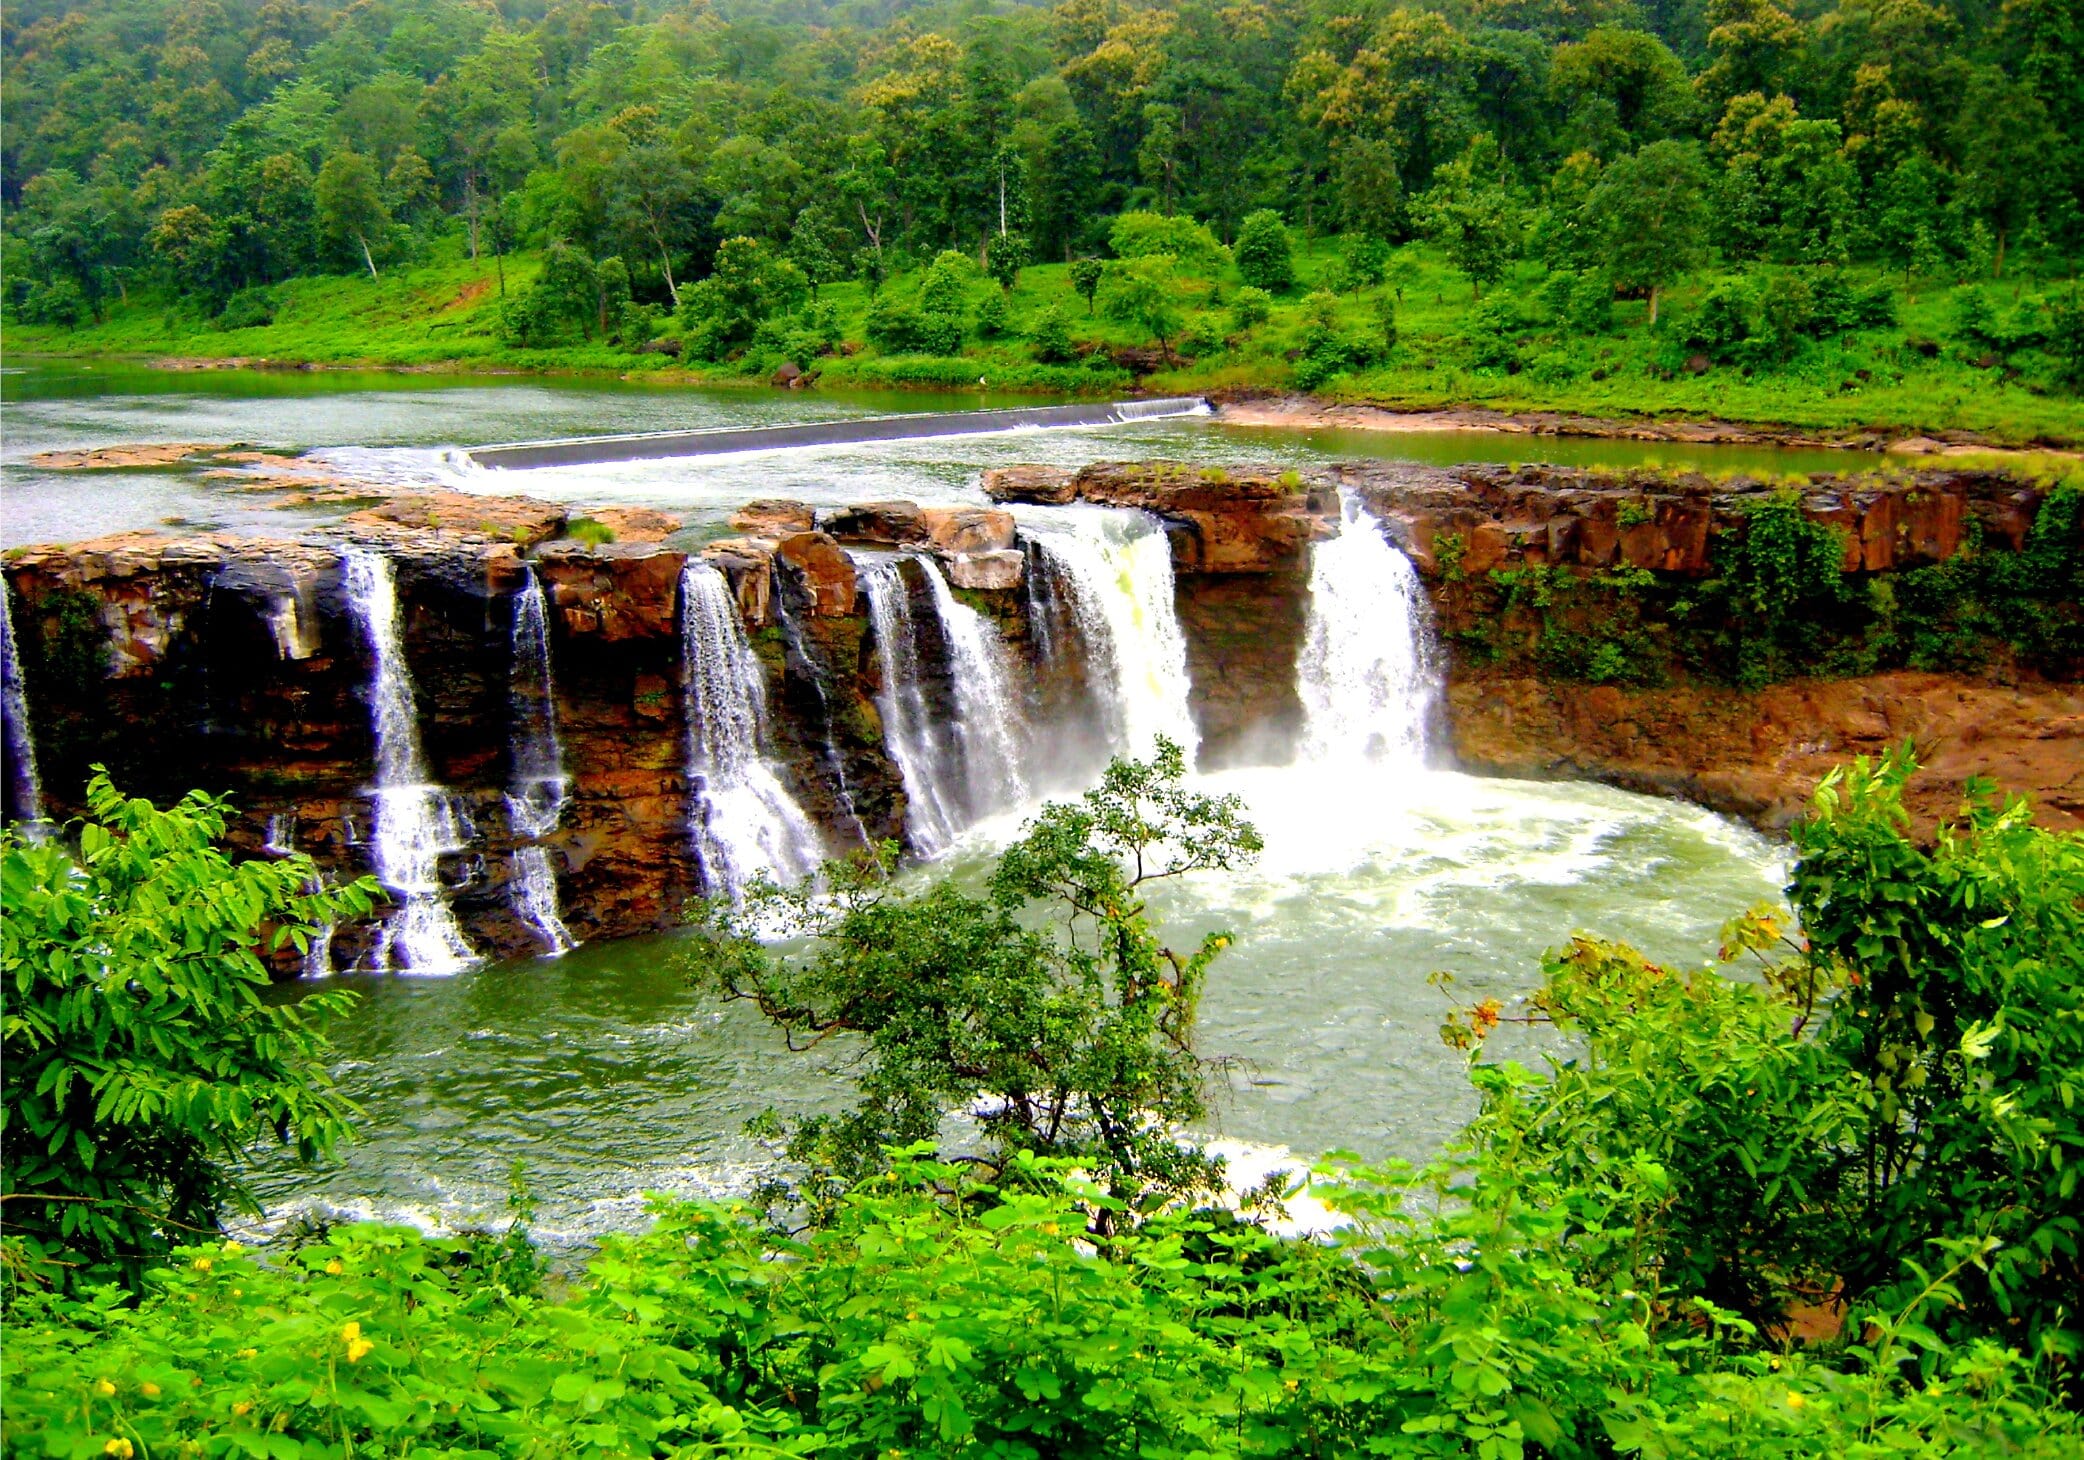 Gira Waterfalls, Saputara